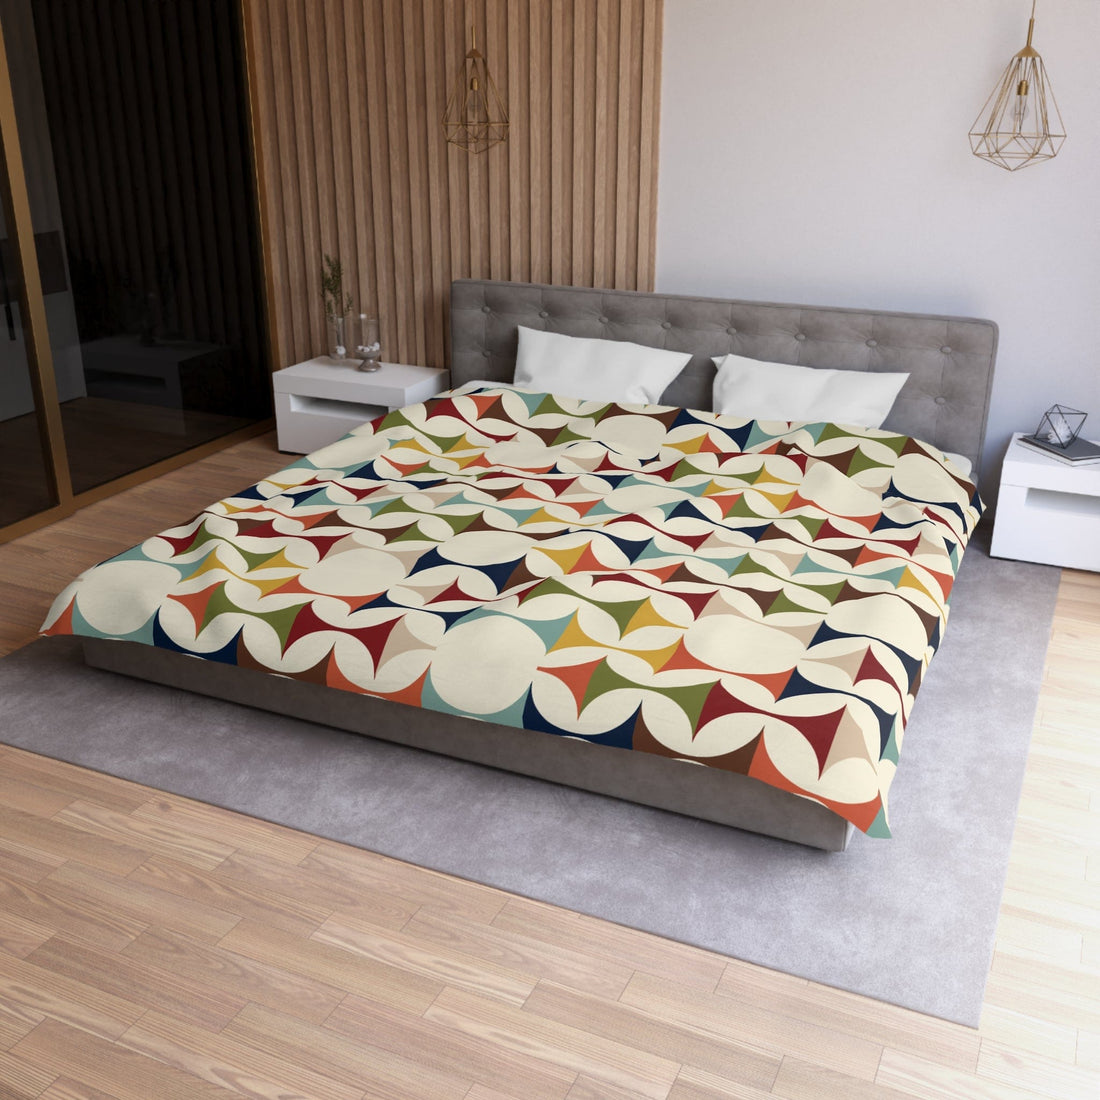 Kate McEnroe New York Retro MCM Duvet Cover, Mid Century Modern Bedding, Vibrant Geometric Scandinavian Modern Danish Bed DecorDuvet Covers18079142081112828054